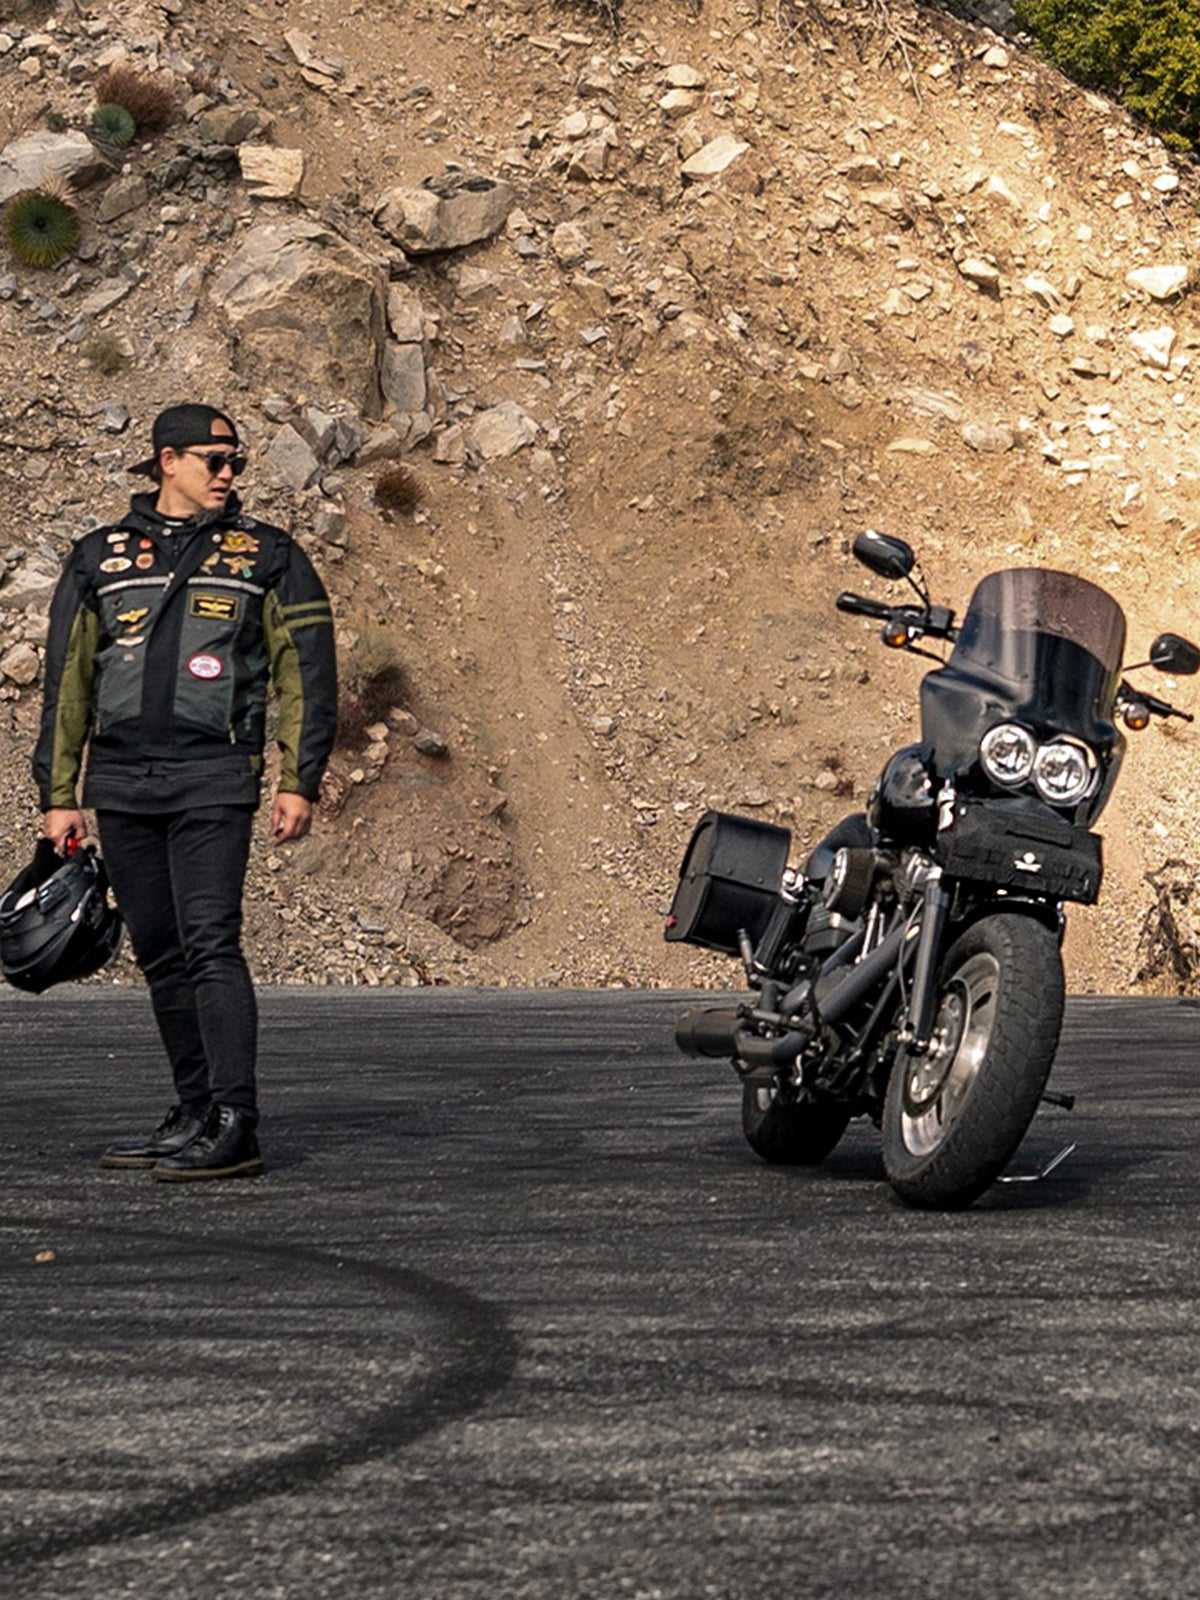 BackrestsSissy Bar Pads for Harley Davidson Motorcycles Mobile